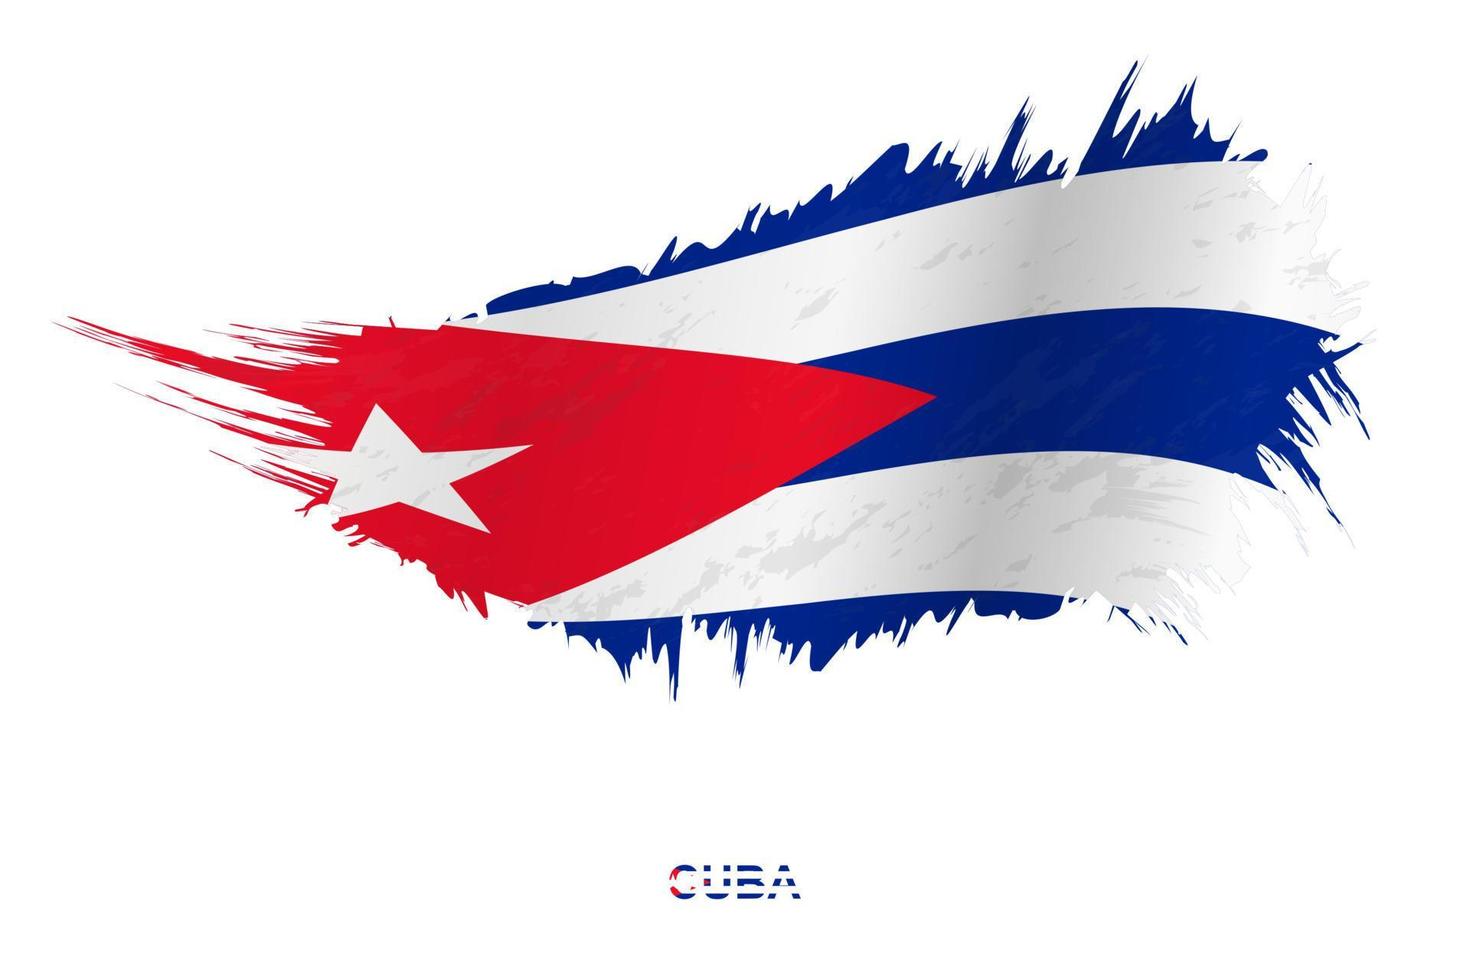 bandera de cuba en estilo grunge con efecto ondulante. vector